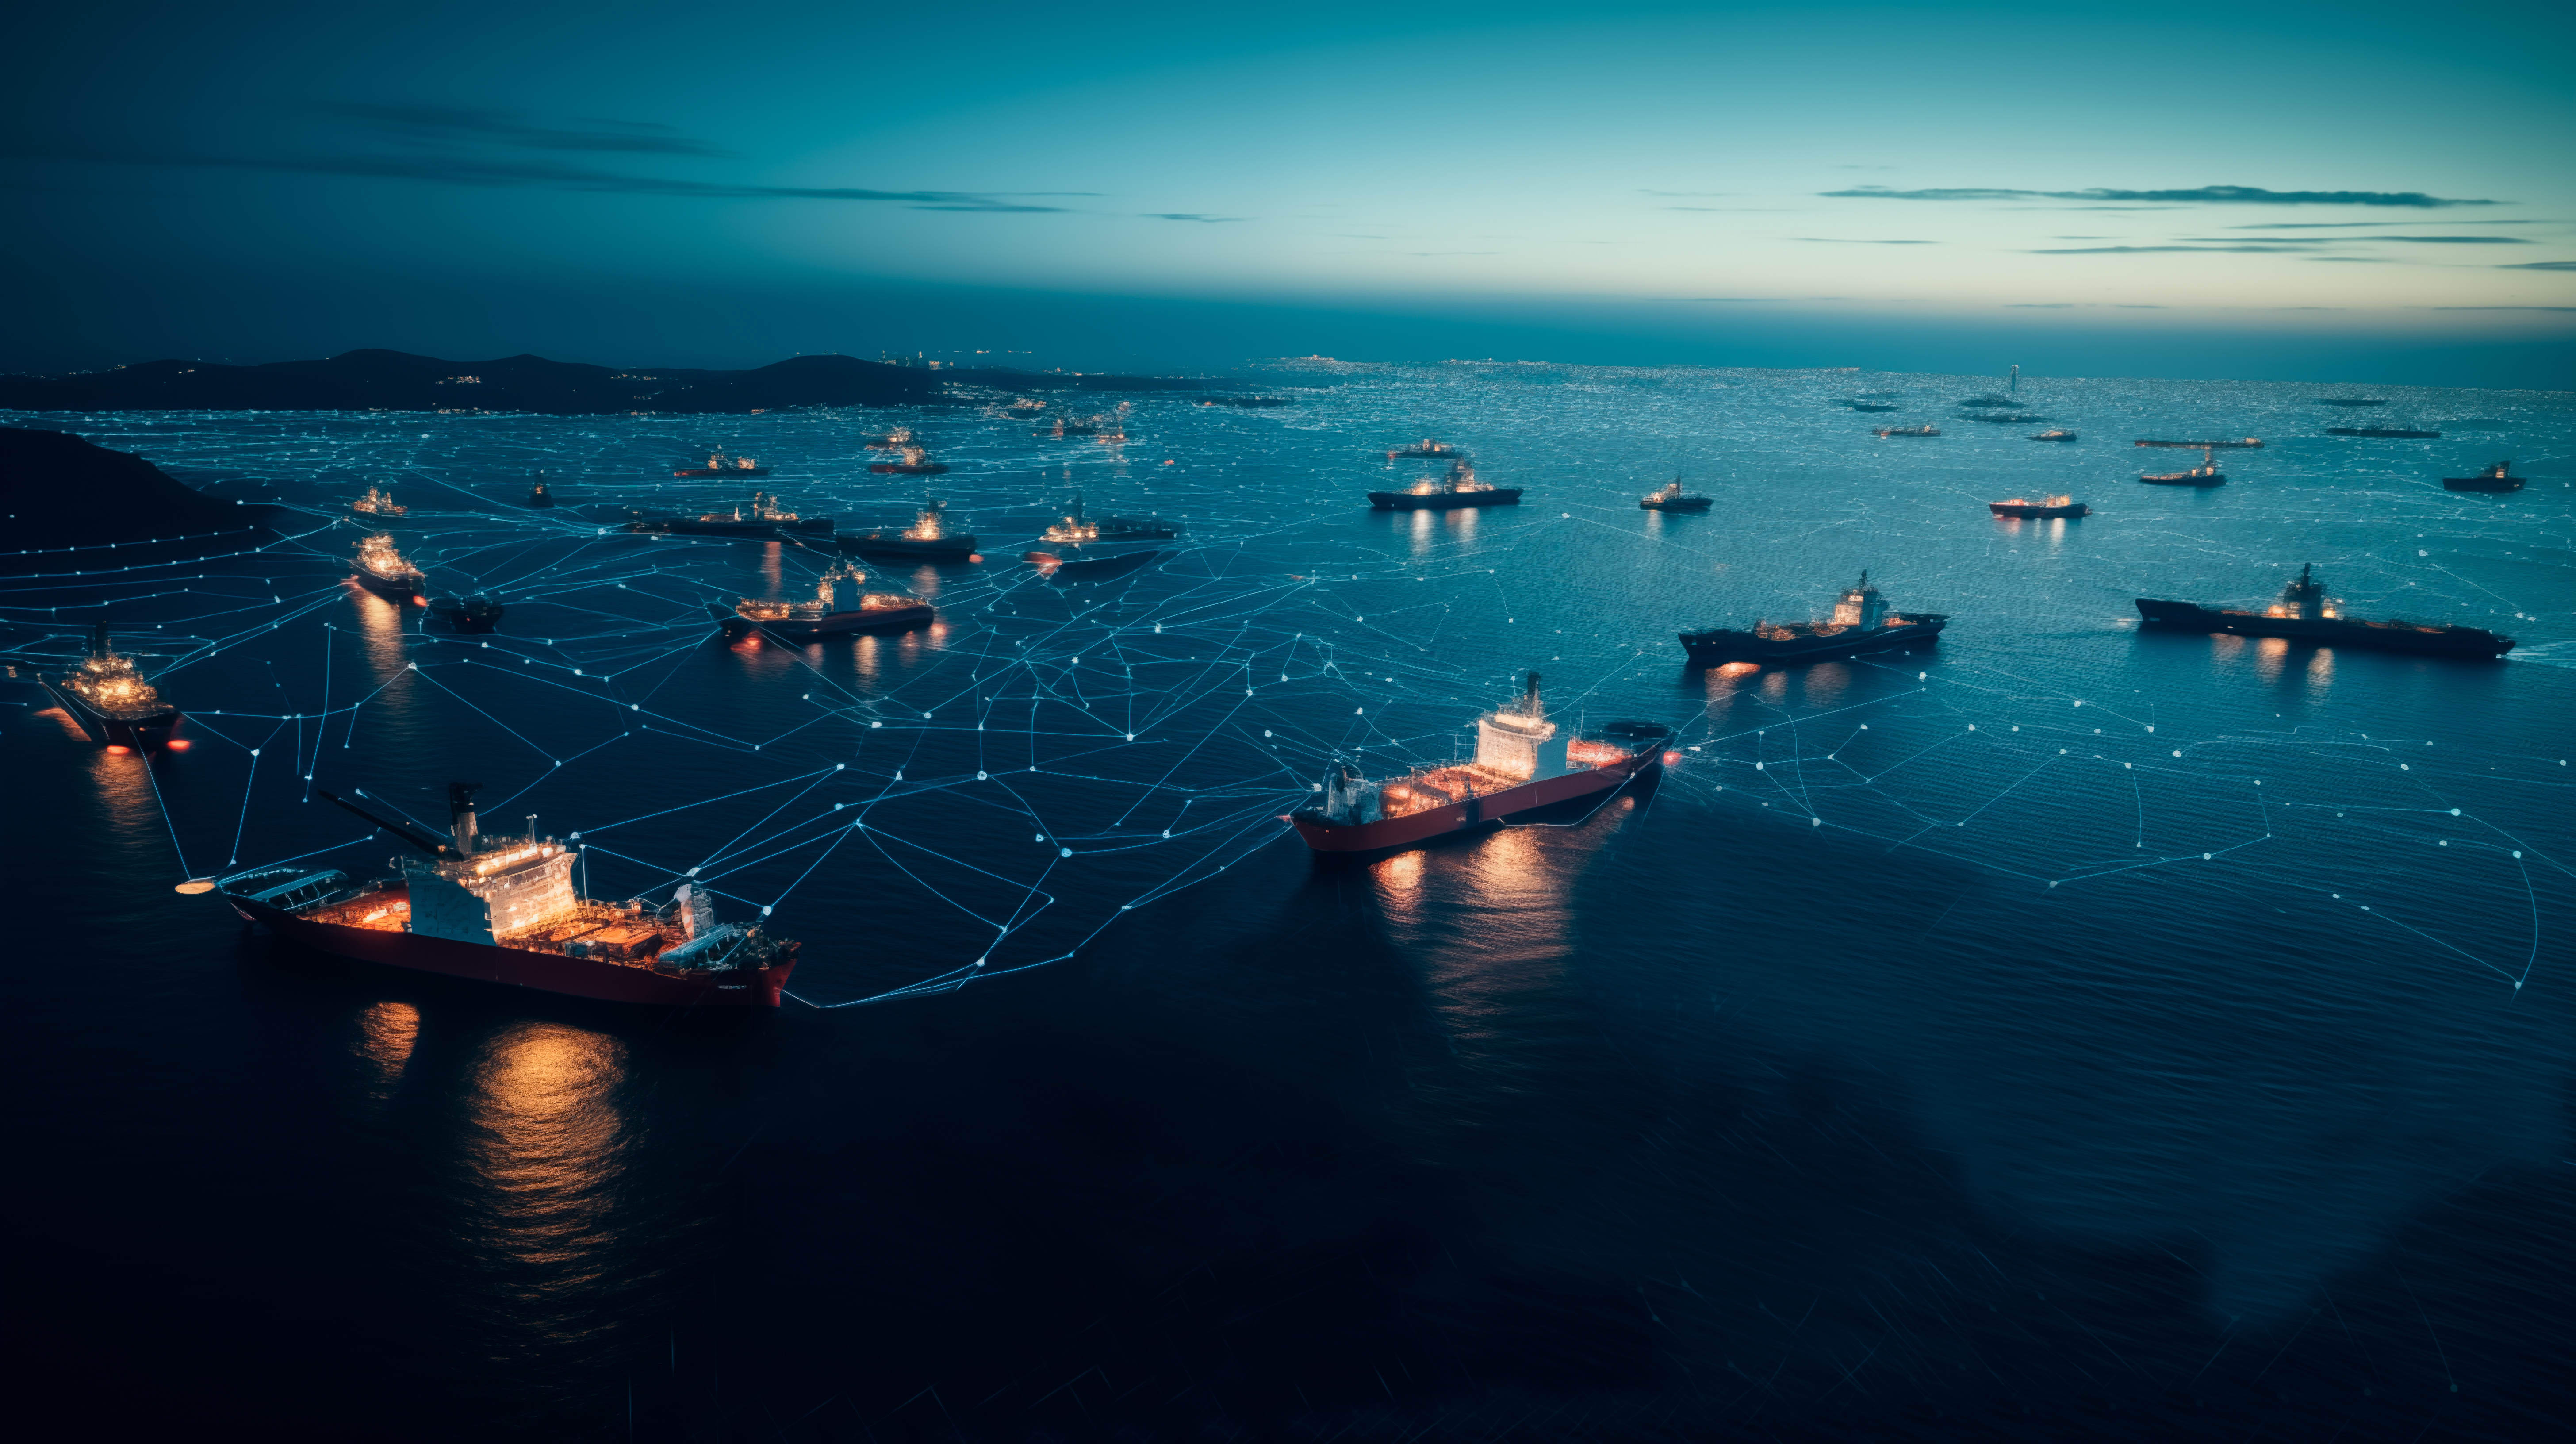 Das Bild zeigt mehrere, durch Linien und Punkte vernetzte Schiffe am Abend auf einem dunklen Meer vor eine Küste